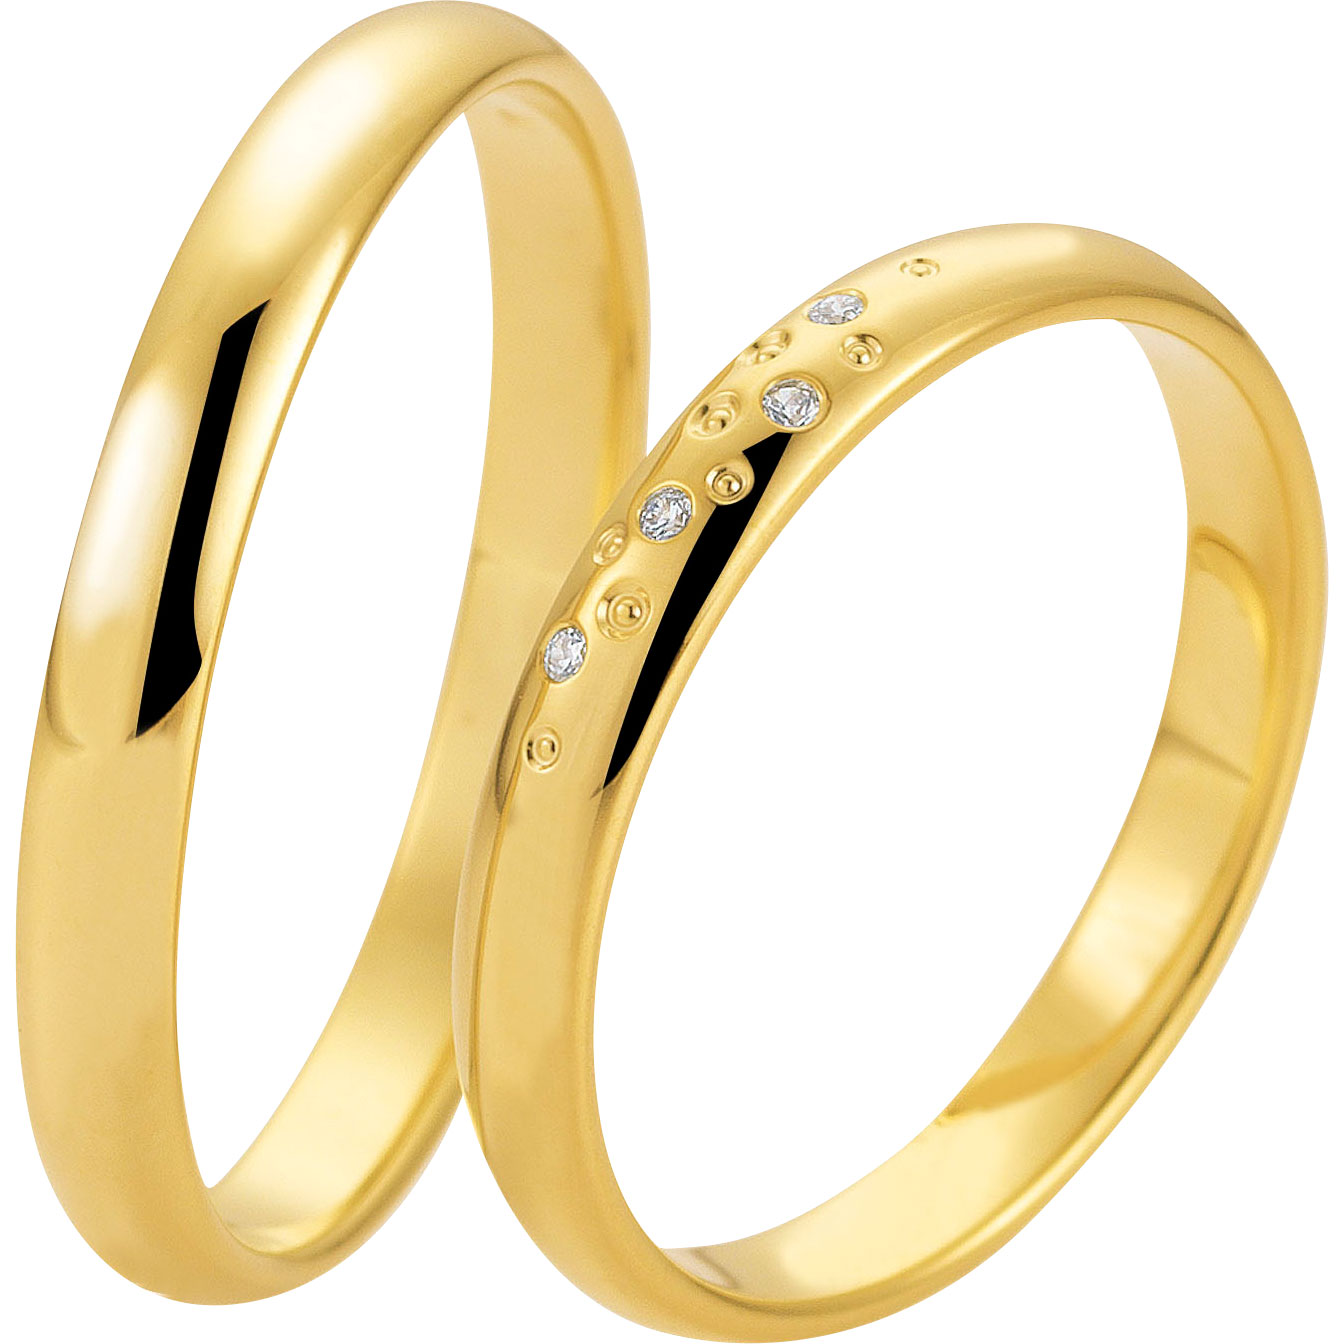 Dapatkan desain cincin khusus Anda dan cincin perak berlapis emas 18k yang dibuat khusus